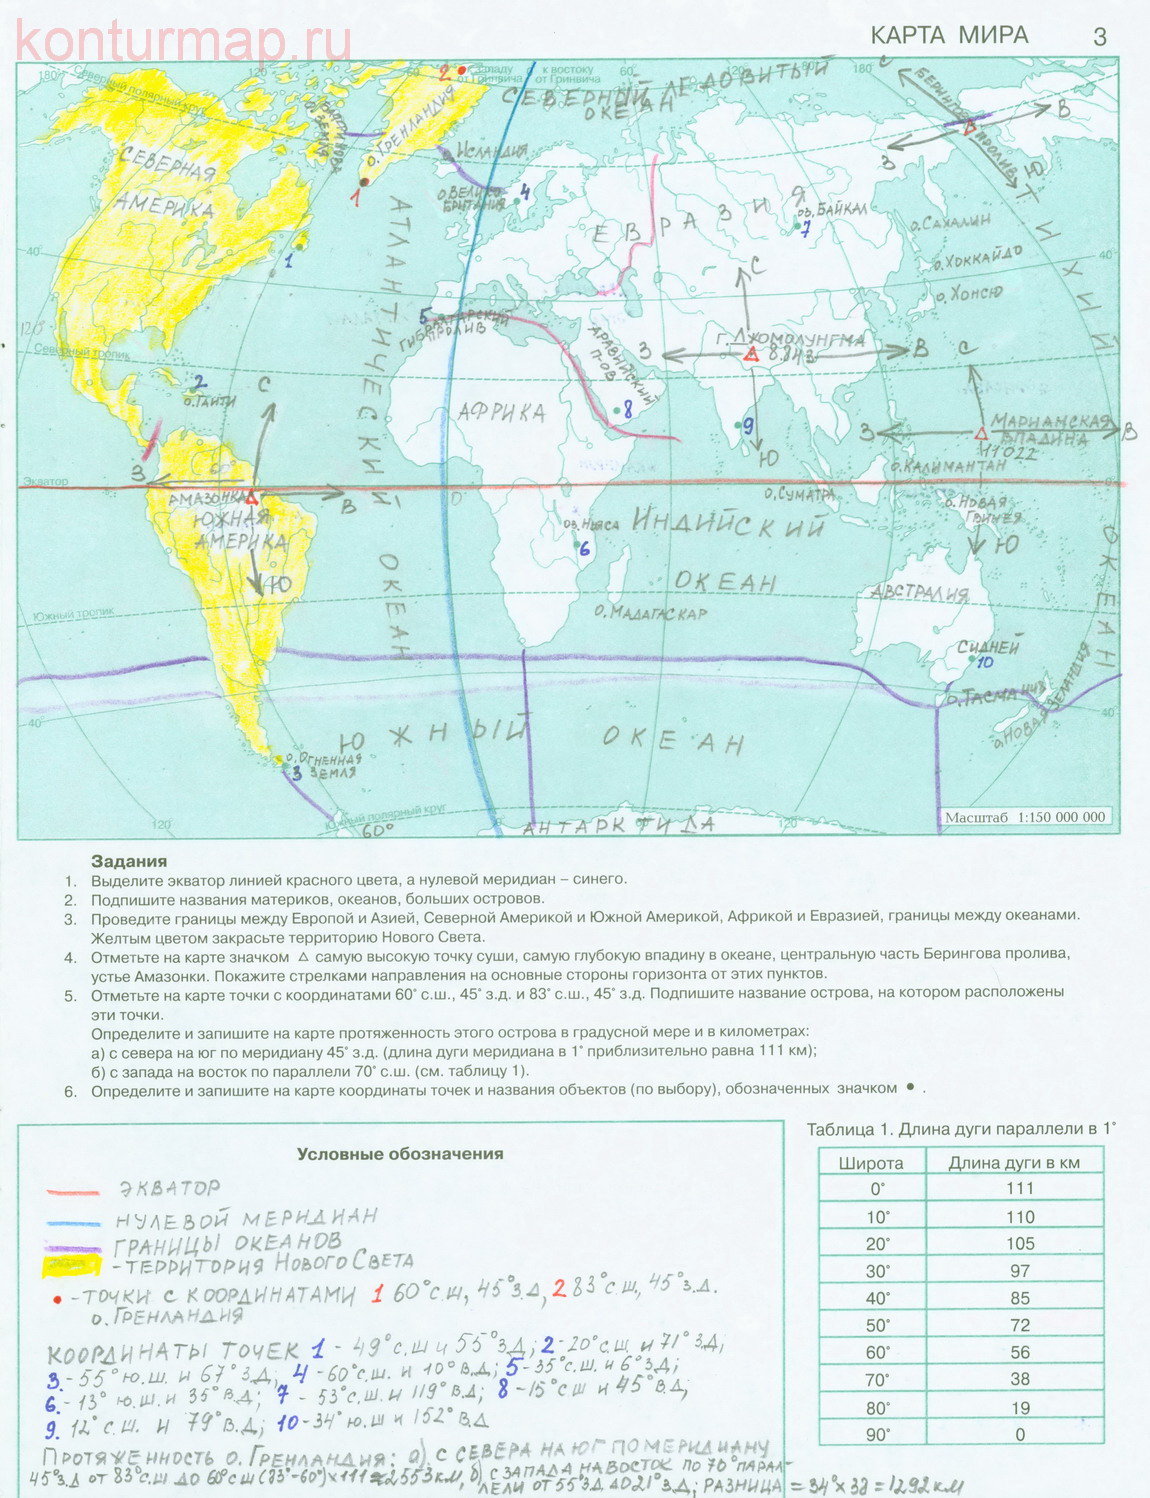 Контурная карта по географии 7 класс с заданиями материки океаны народы и страны